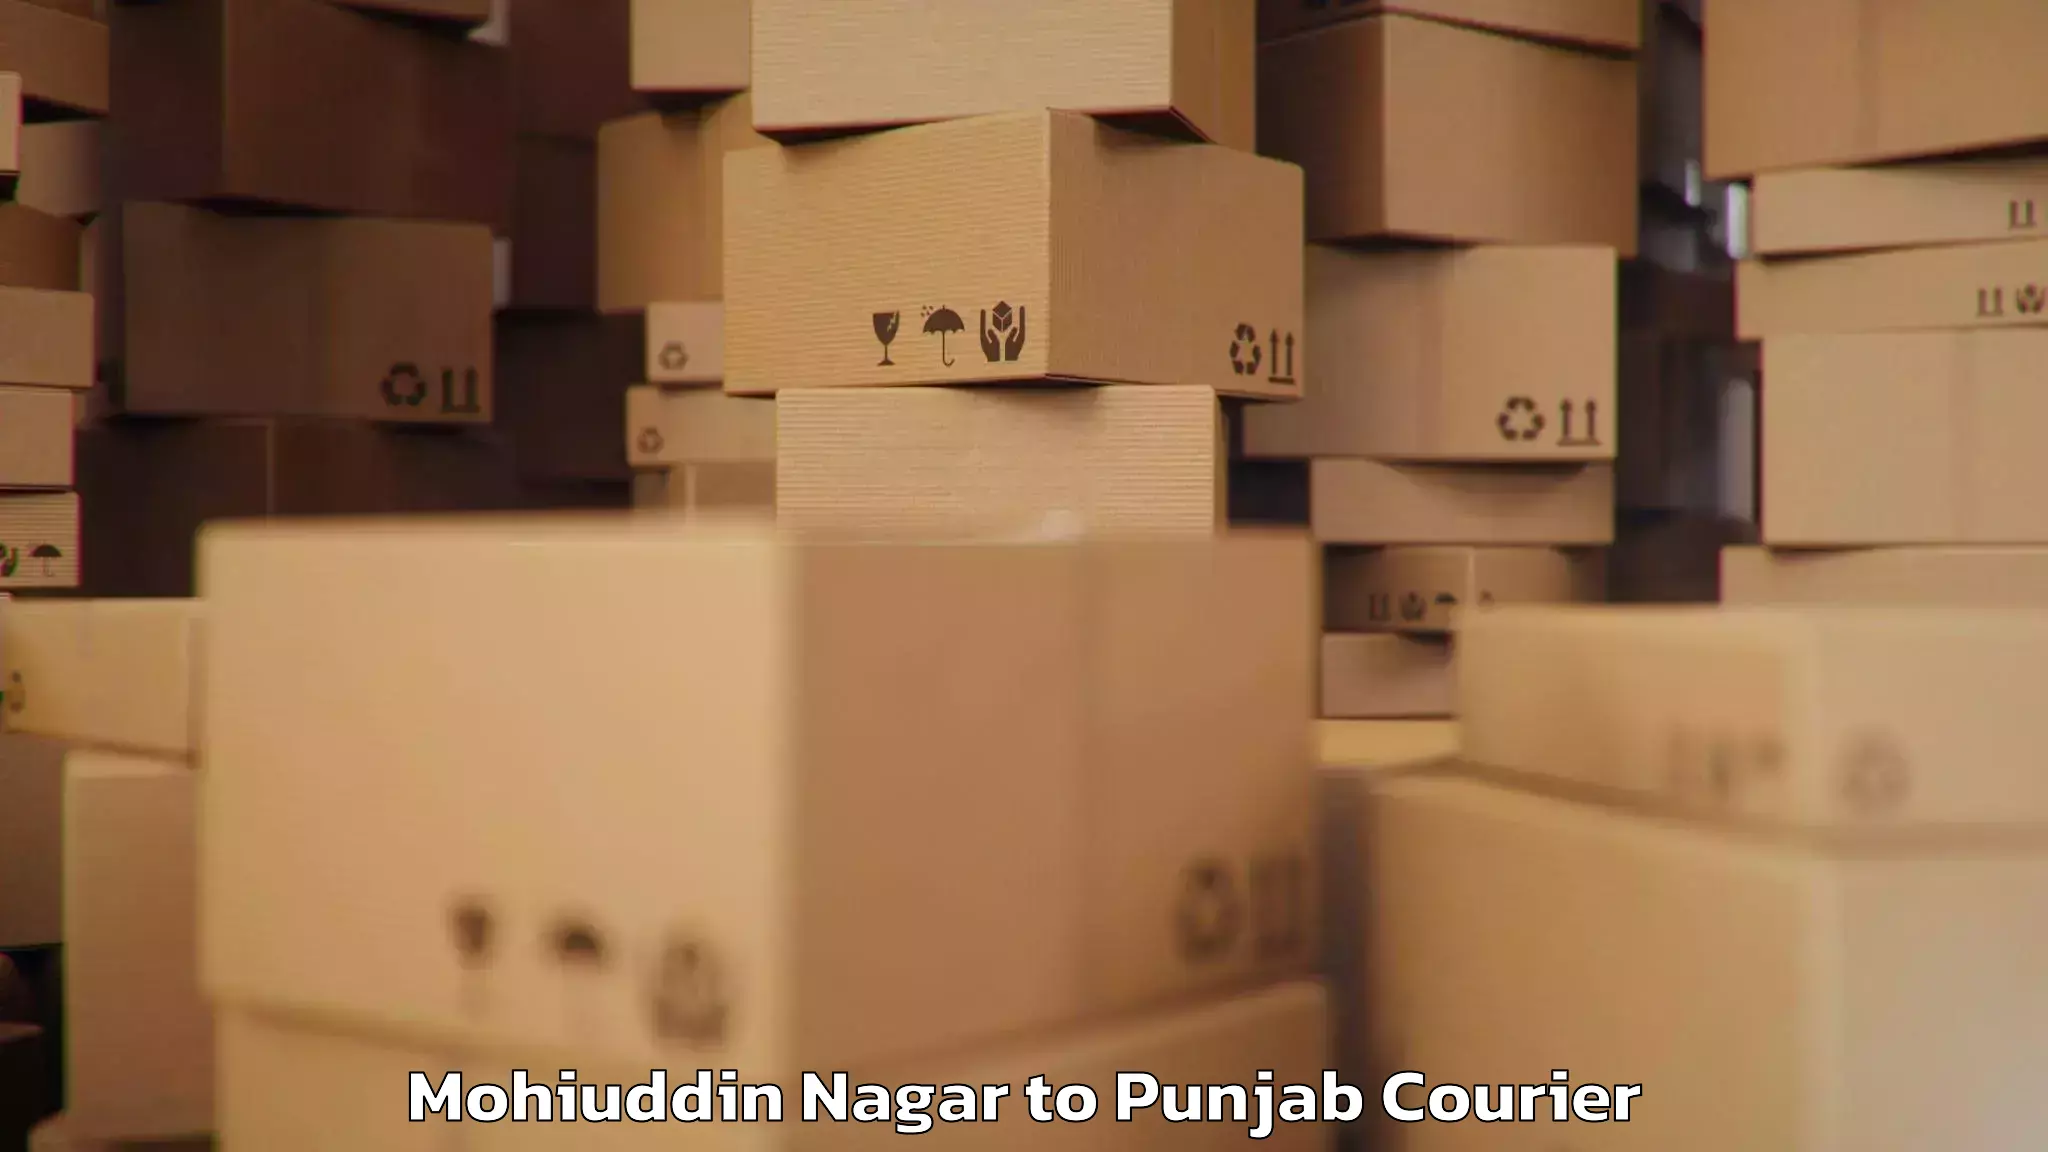 Baggage shipping experts Mohiuddin Nagar to Faridkot